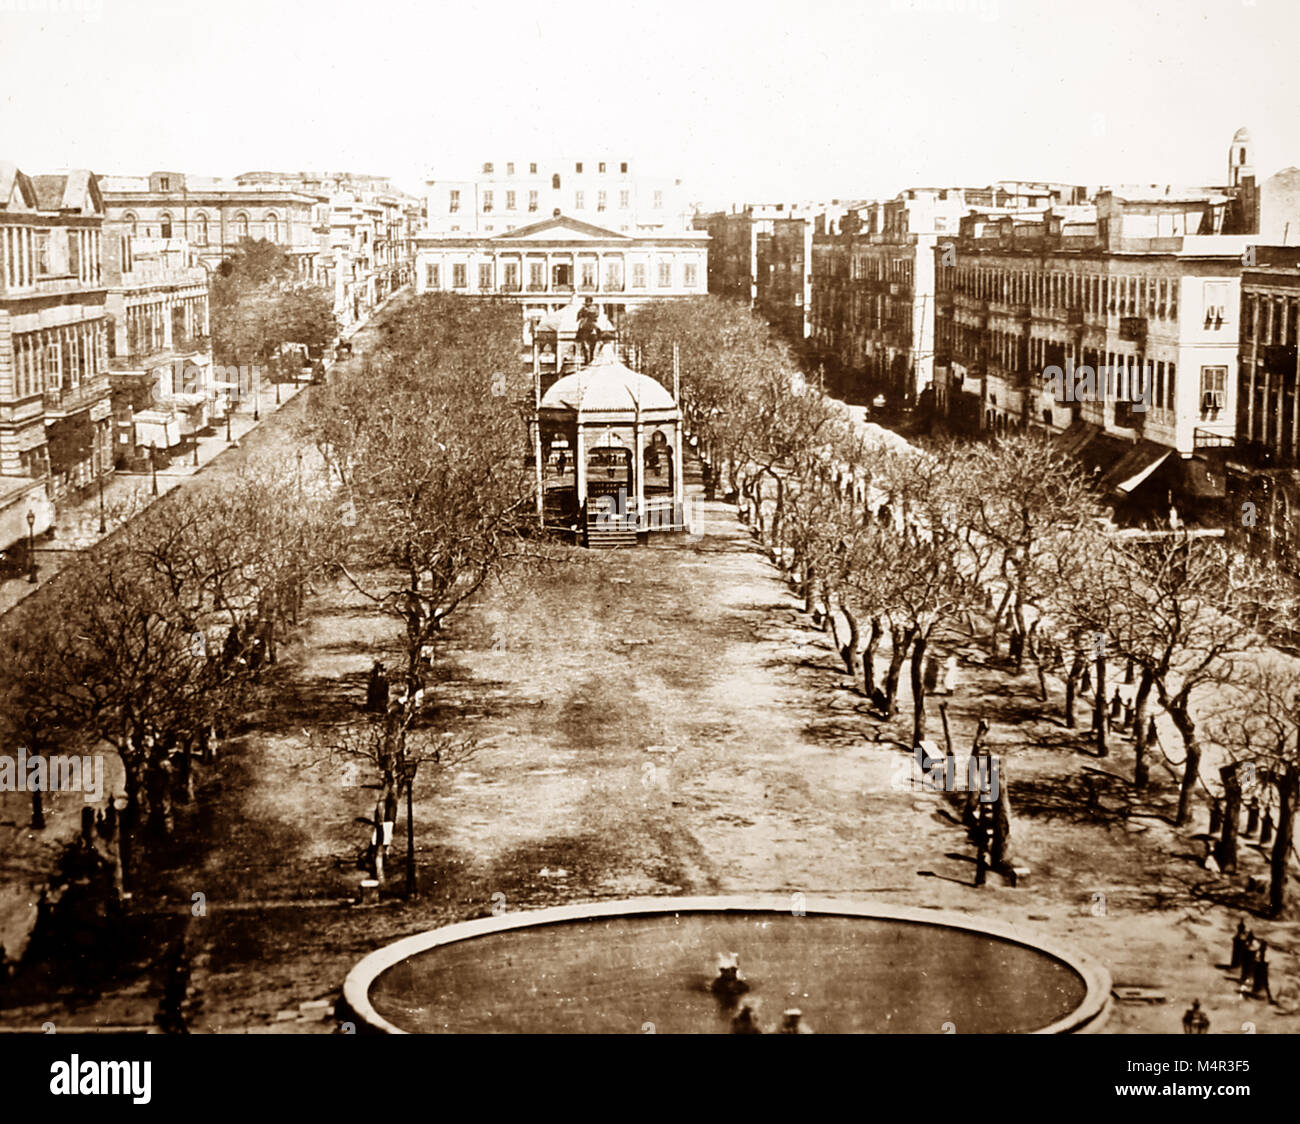 The Grand Square, Alexandria, Egypt, Victorian period Stock Photo